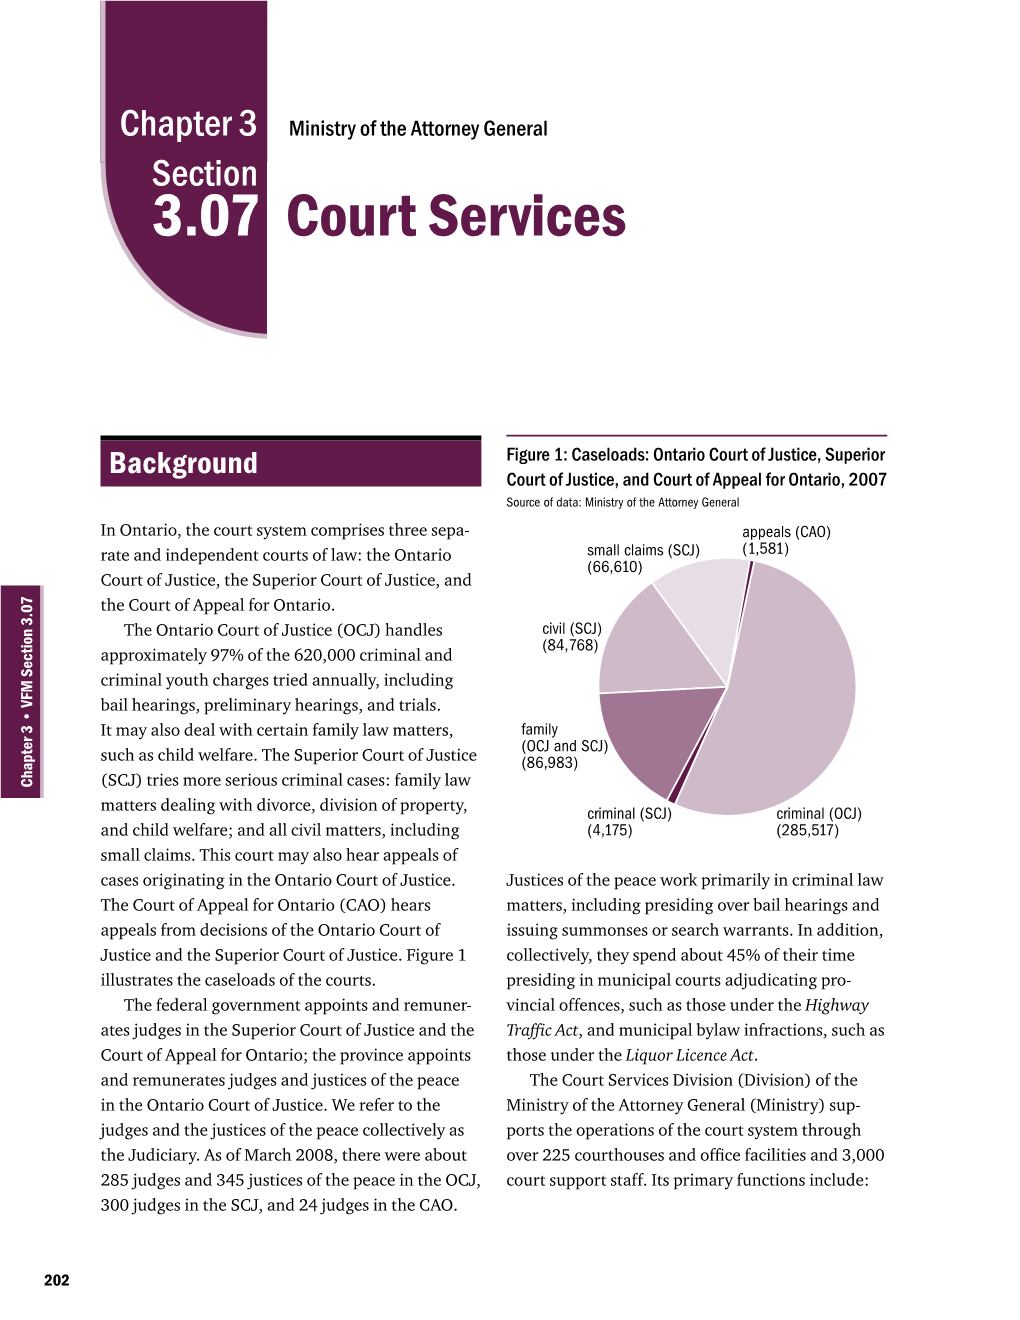 3.07 Court Services (Pdf 703Kb)